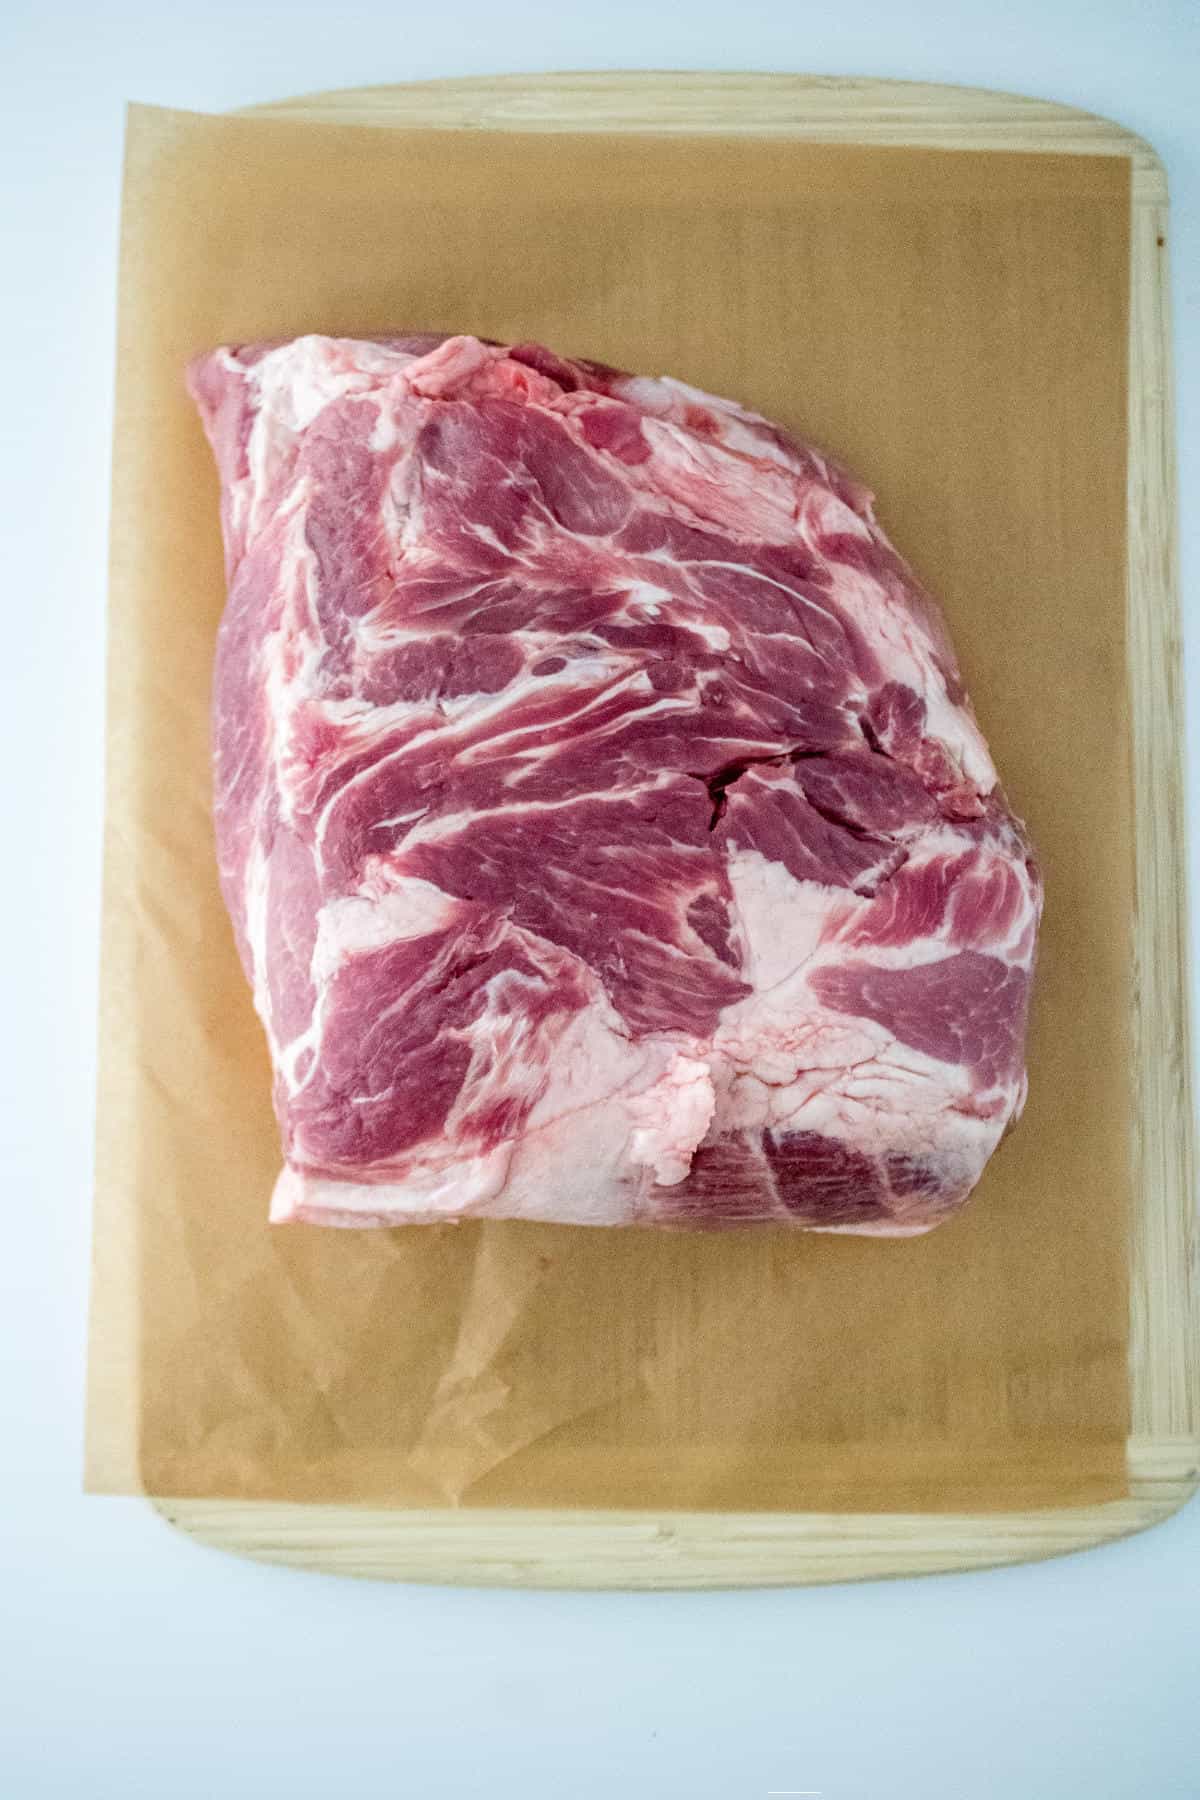 slab of pork on a cutting board.